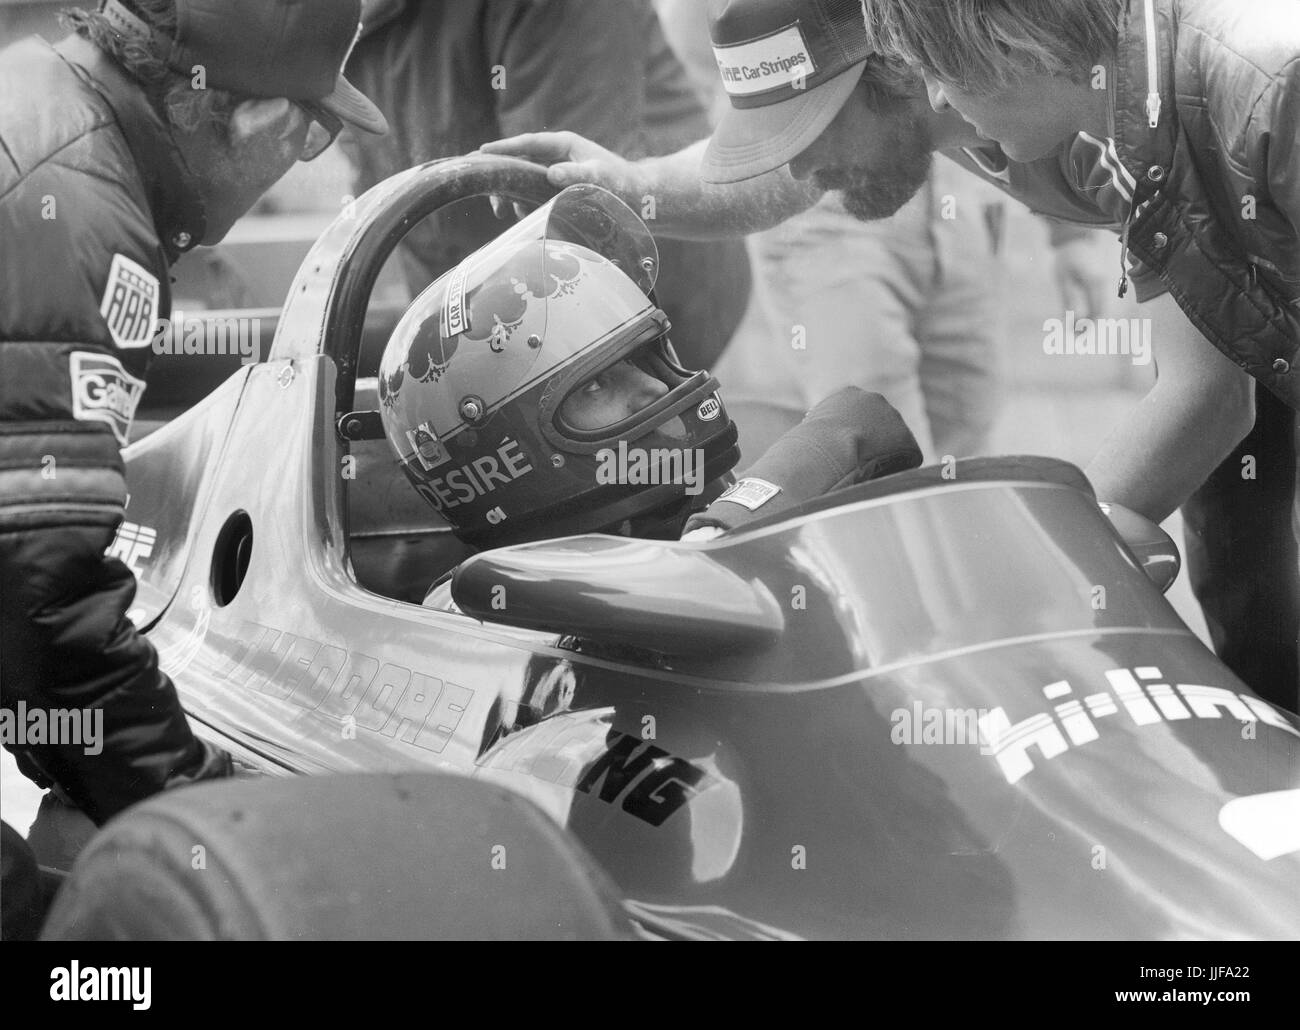 Pilote de course femme désir Wilson à Silverstone Grand Prix de Grande-Bretagne 1980, où elle n'a pas réussi à se qualifier pour la course. Banque D'Images